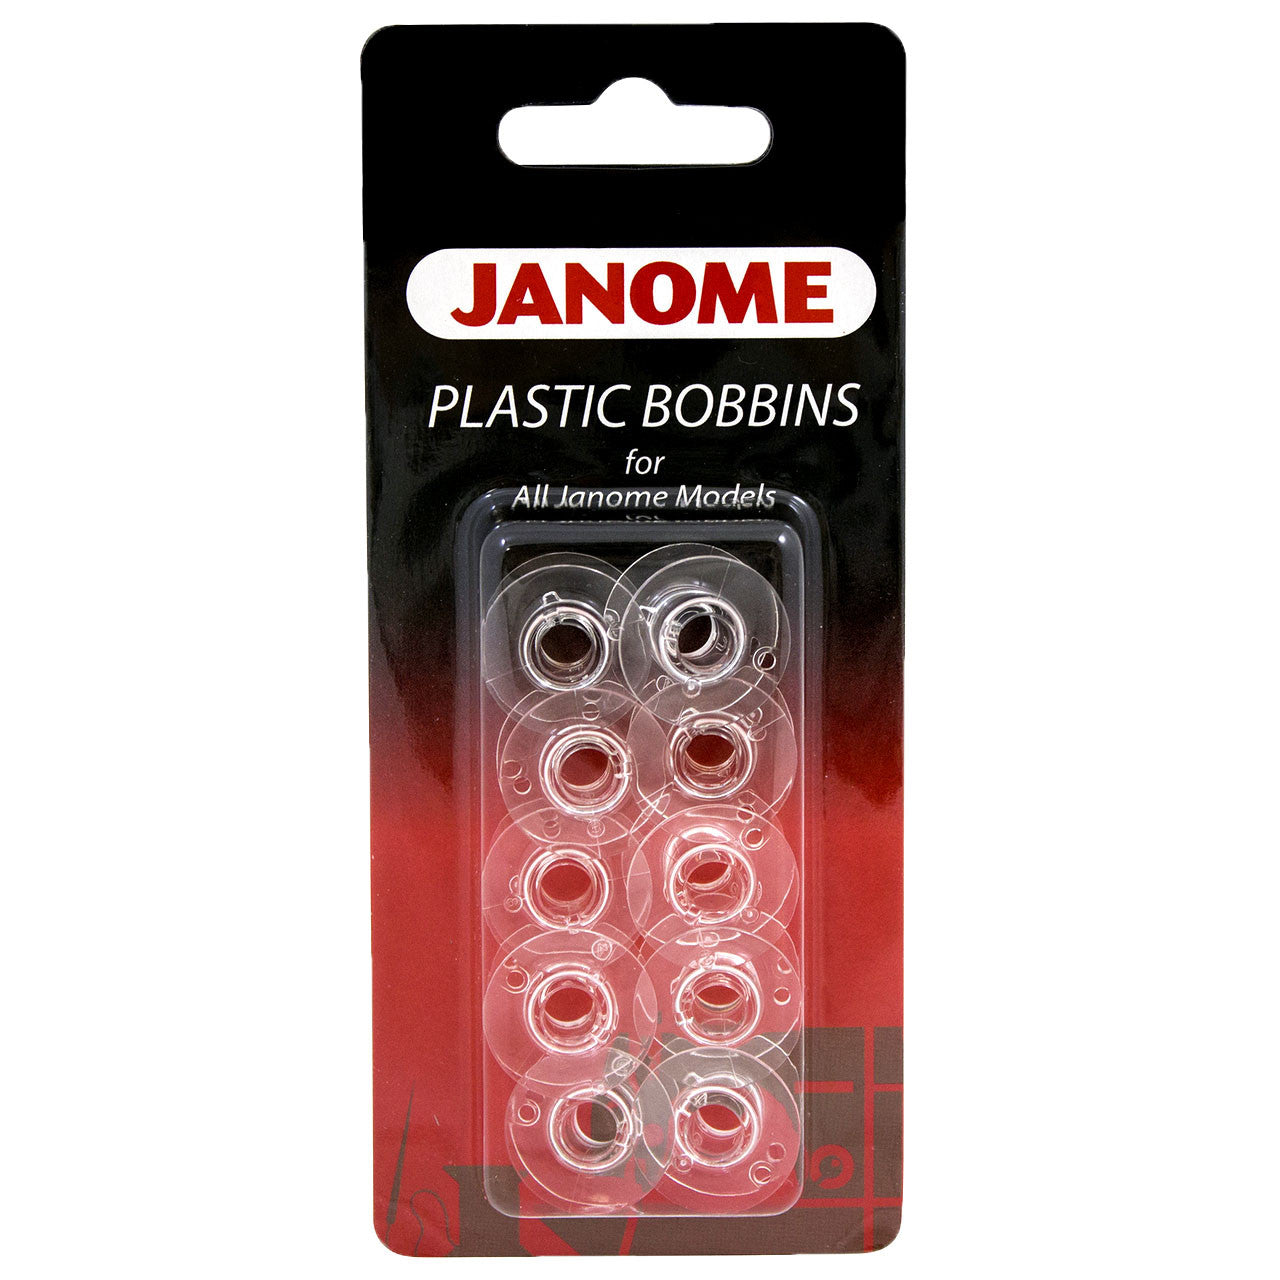 Janome 200122647 Style J Plastic Bobbins 10 Pack